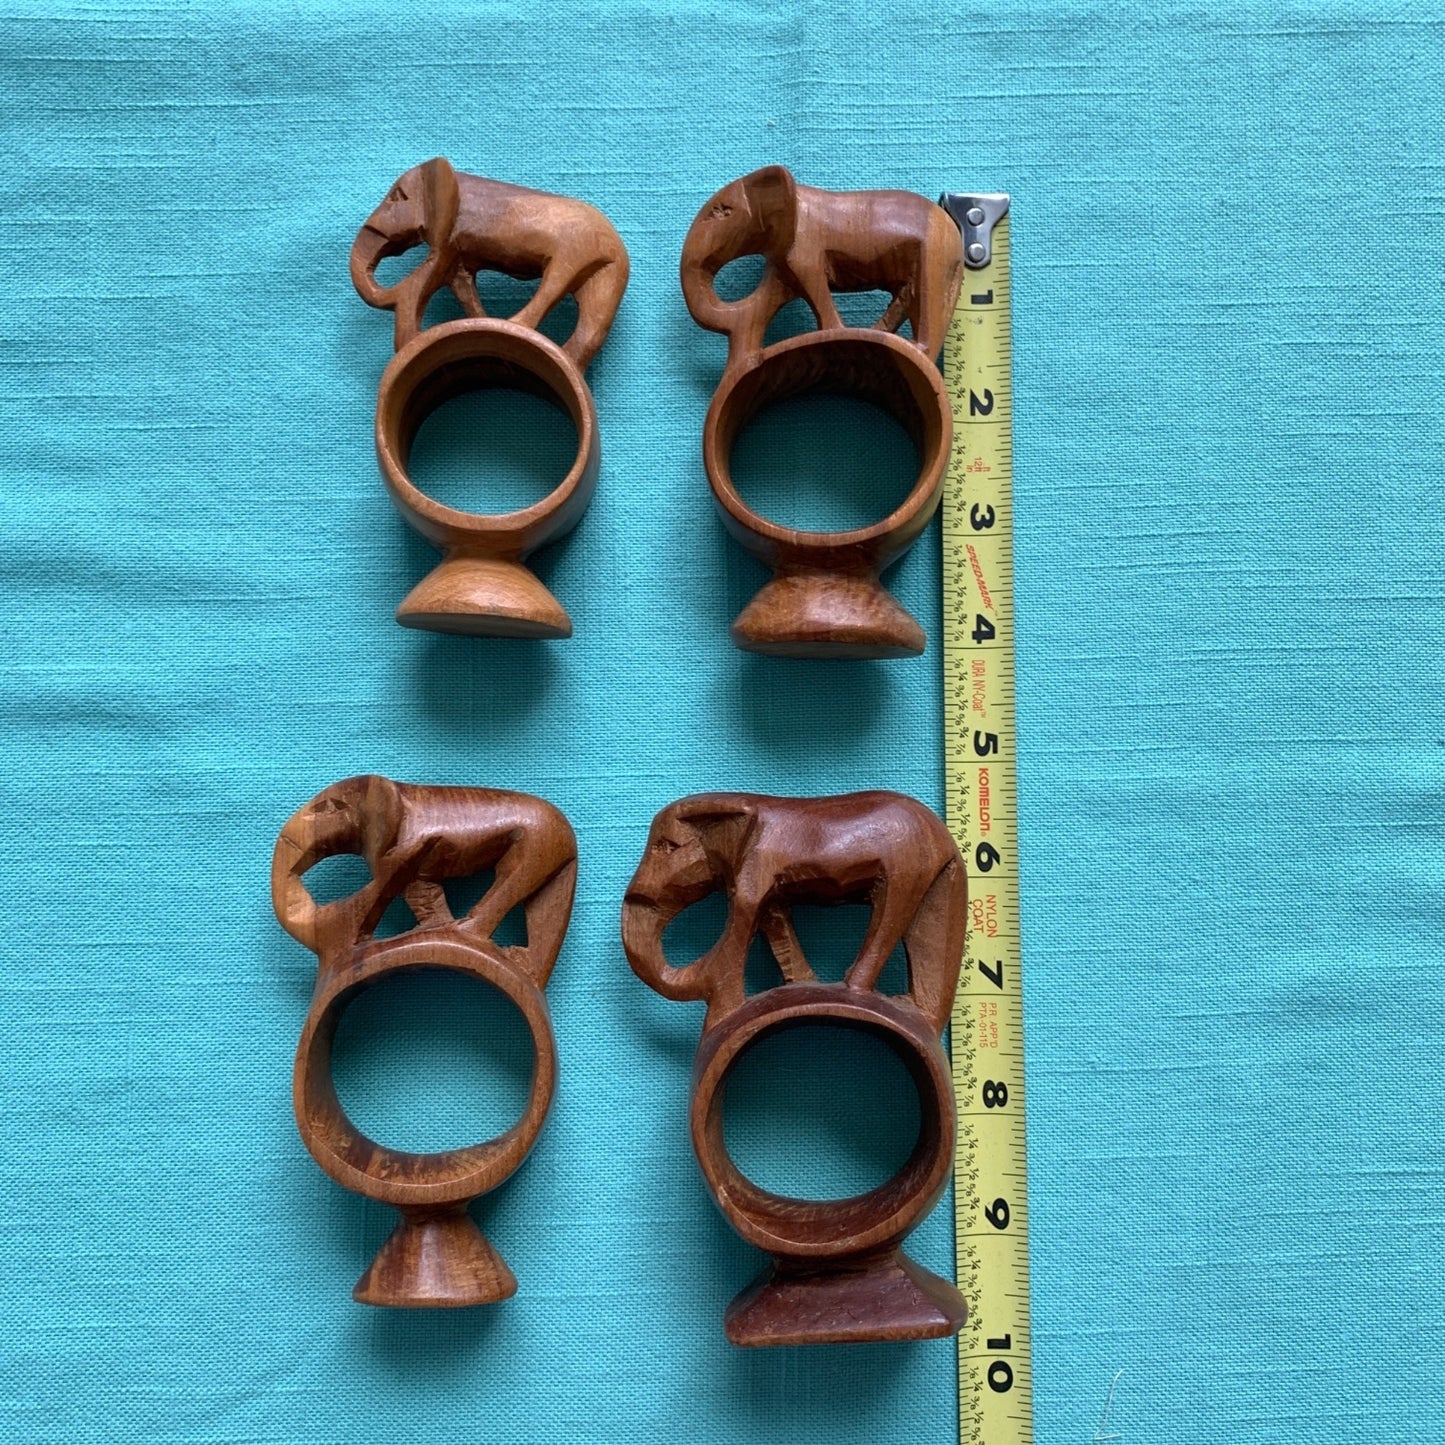 Vintage Handcarved Wooden Elephant Napkin Rings Set of 4